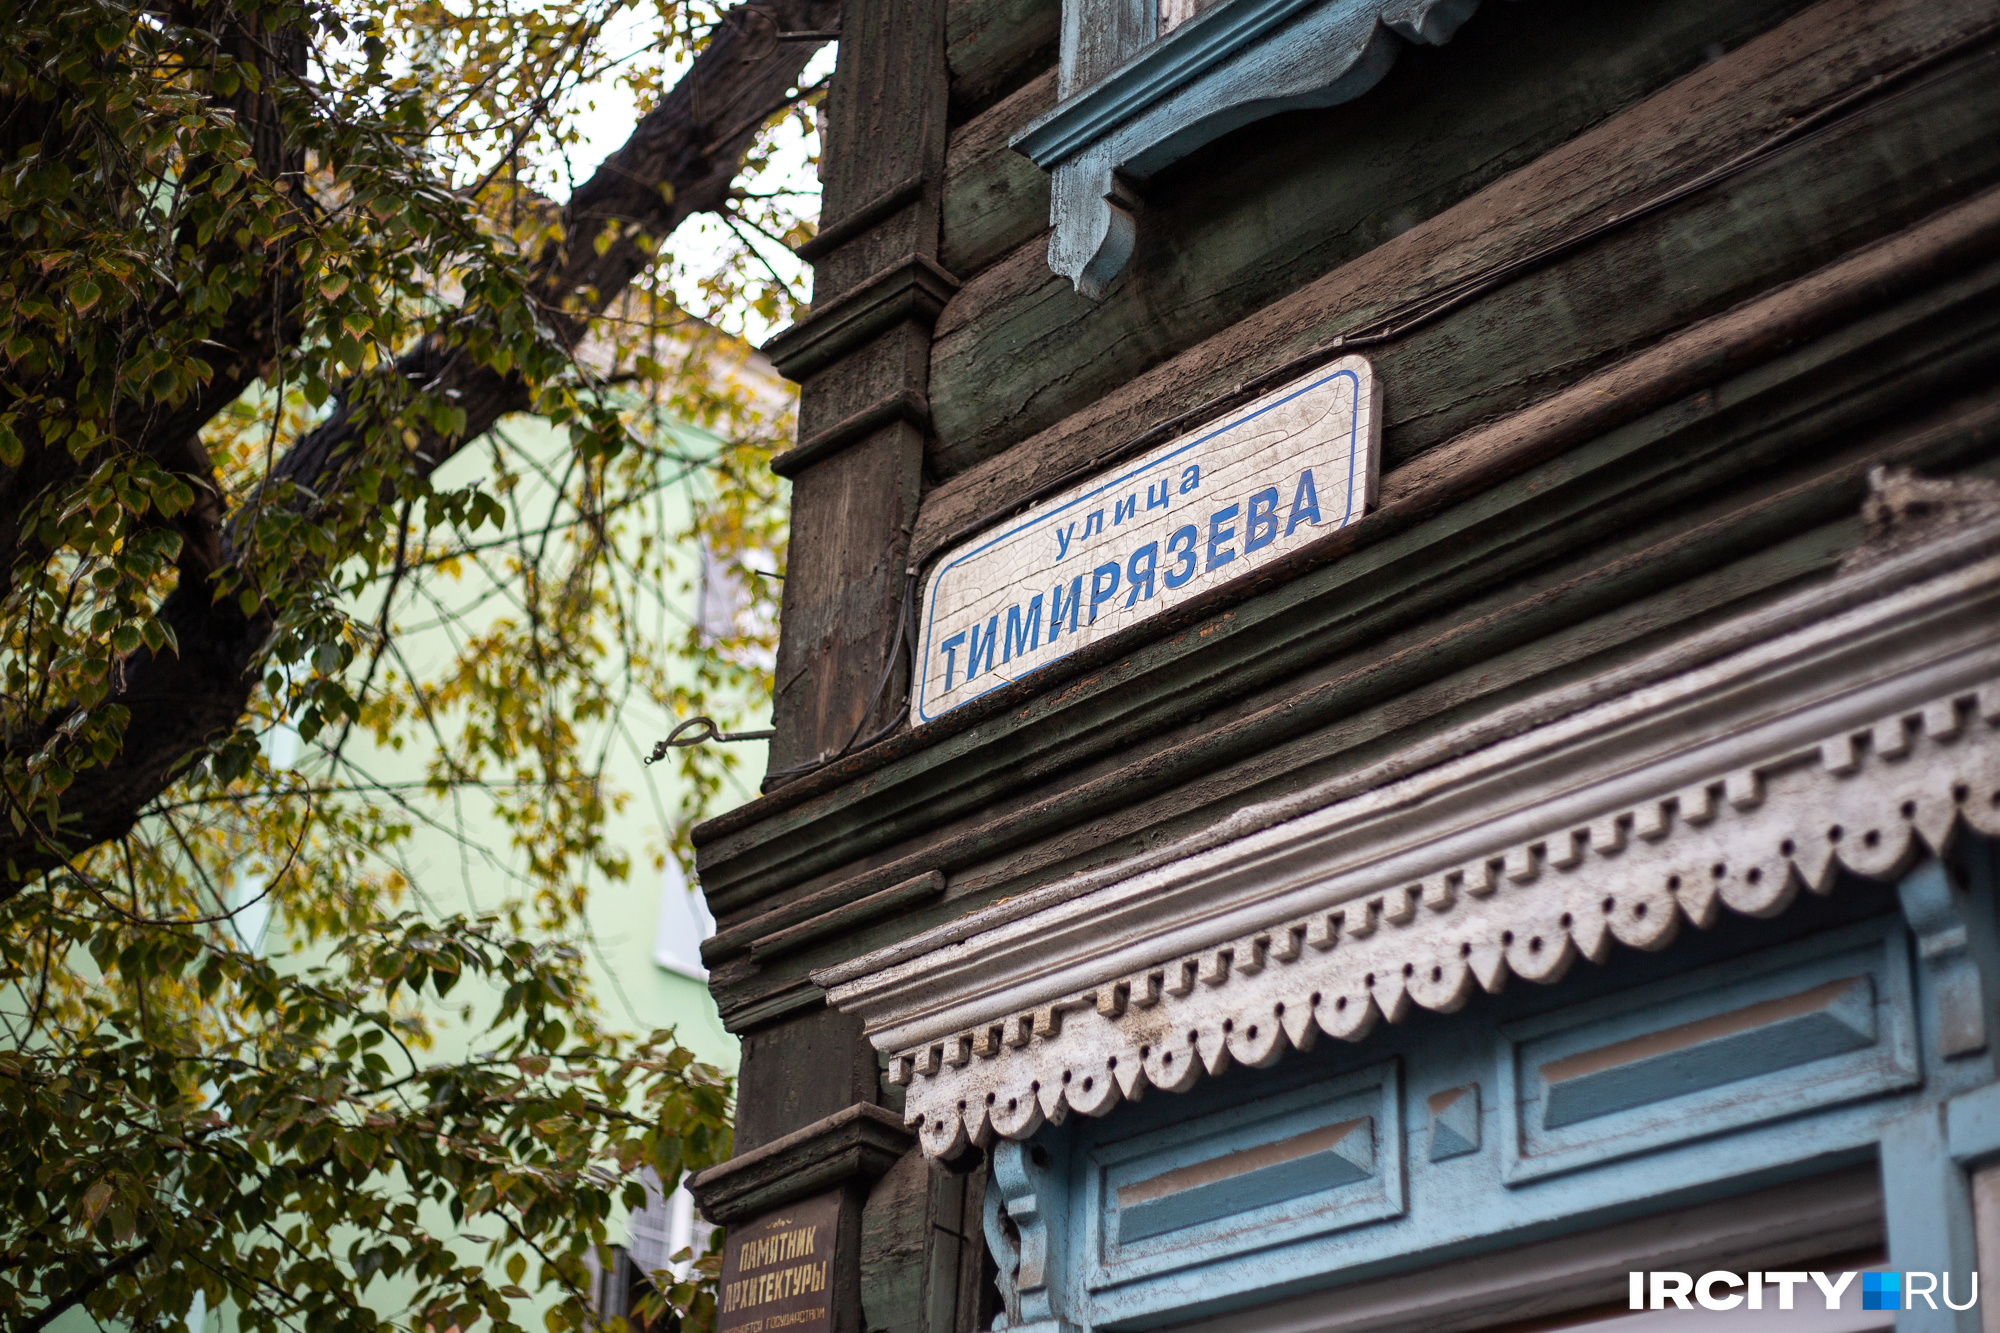 На доме висит табличка «улица Тимирязева», но на самом деле адрес у дома — <nobr class="_">Красноармейская, 25а</nobr>